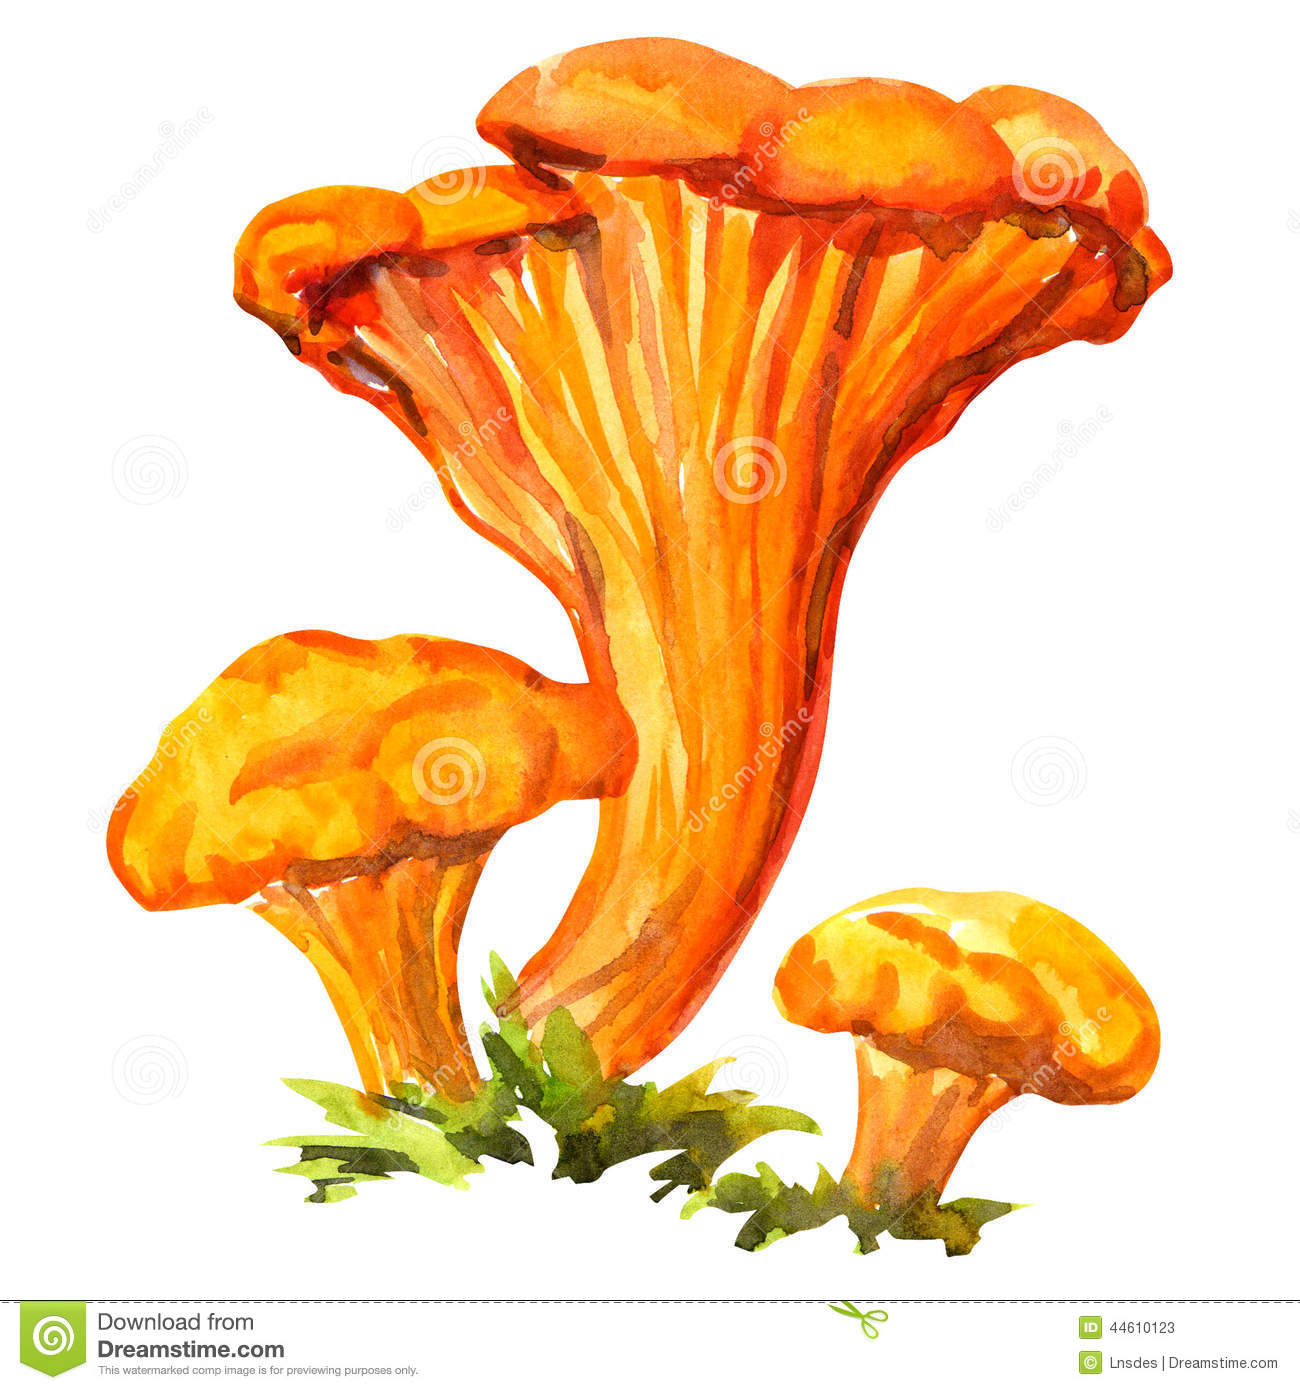 грибы лисички картинки для детей цветные